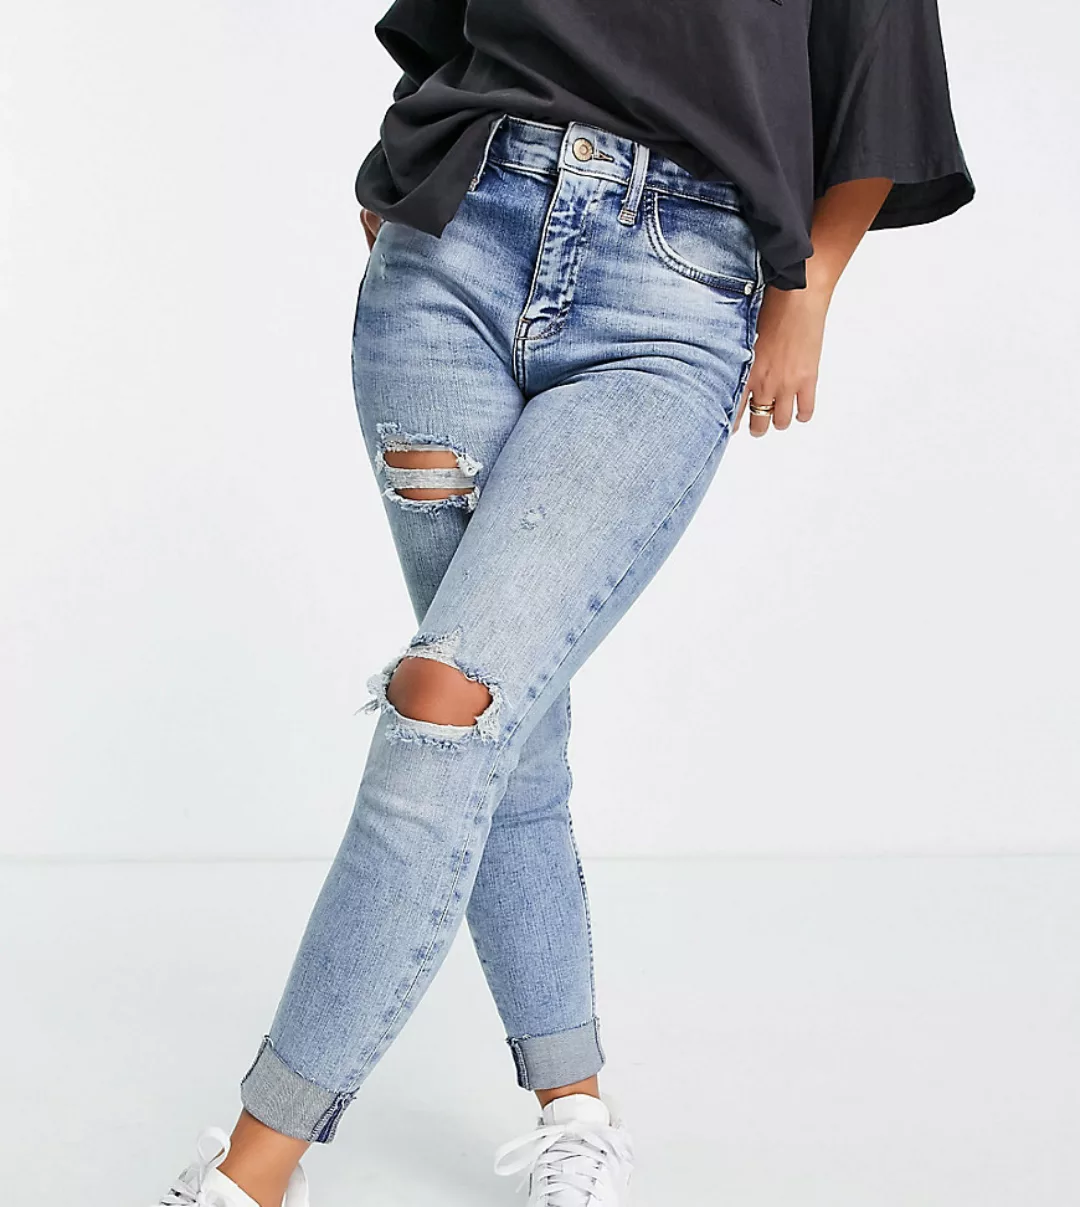 River Island Petite – Figurformende Jeans mit engem Schnitt, hohem Bund und günstig online kaufen